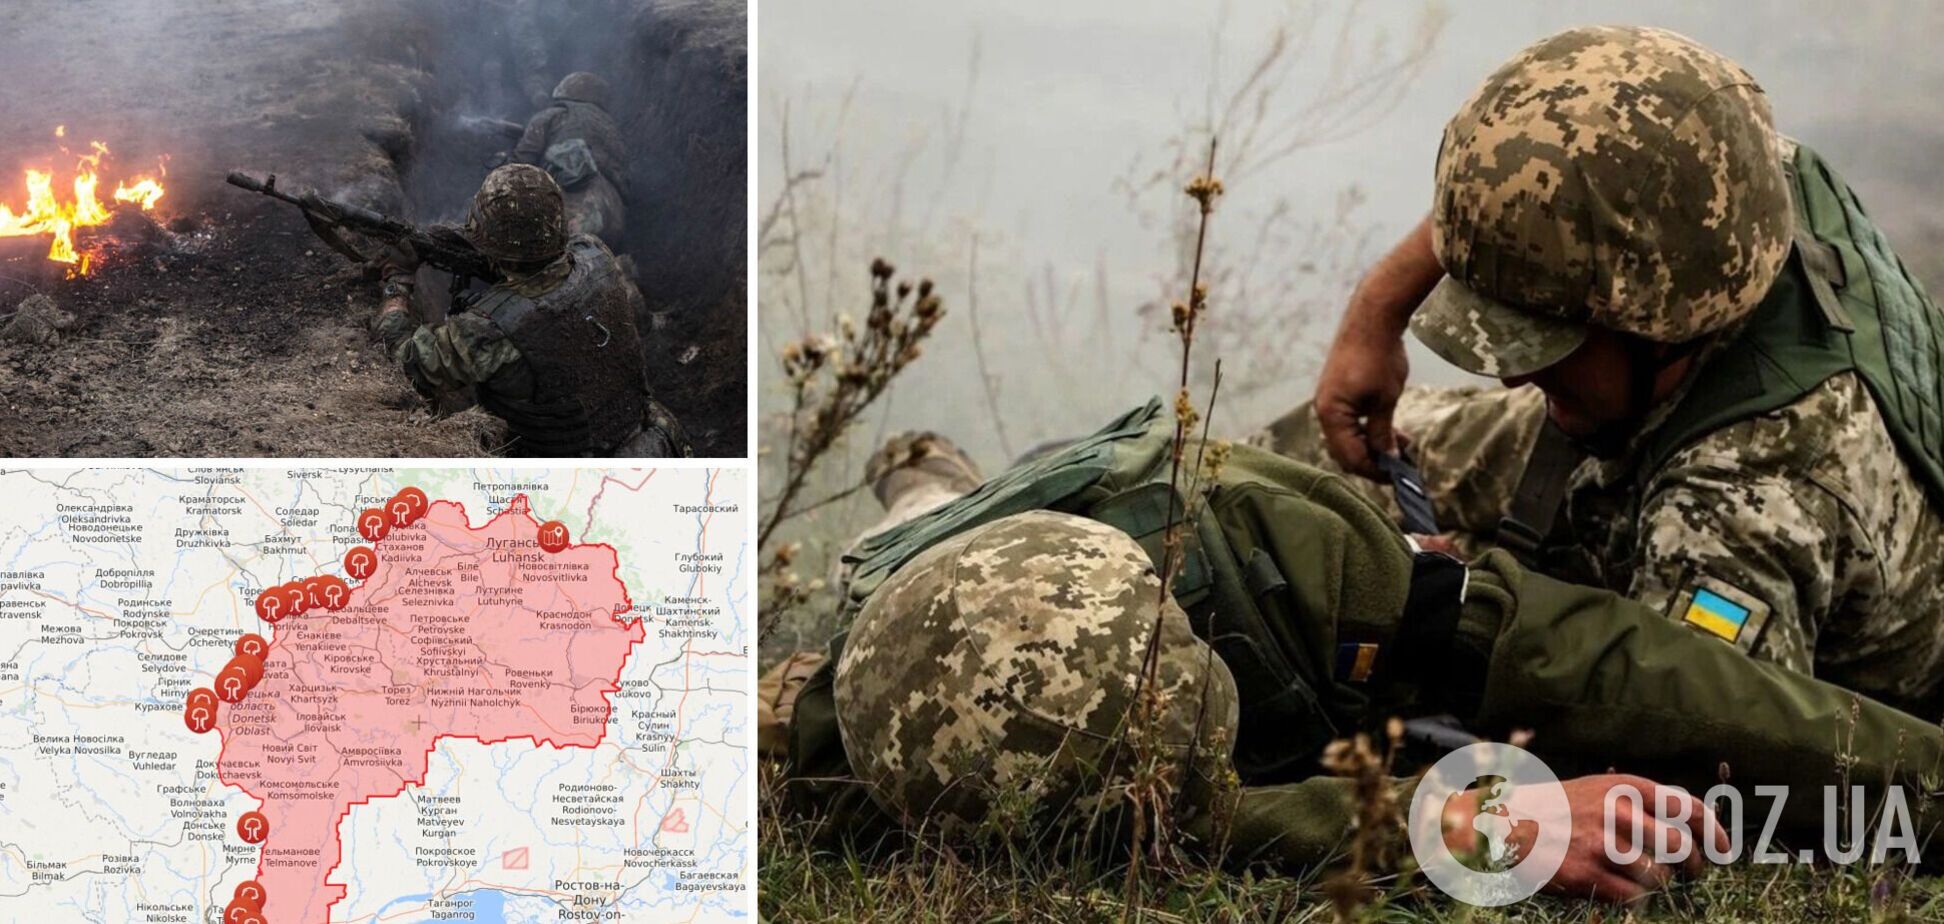 Окупанти поранили бійця ЗСУ на Донбасі, він у важкому стані